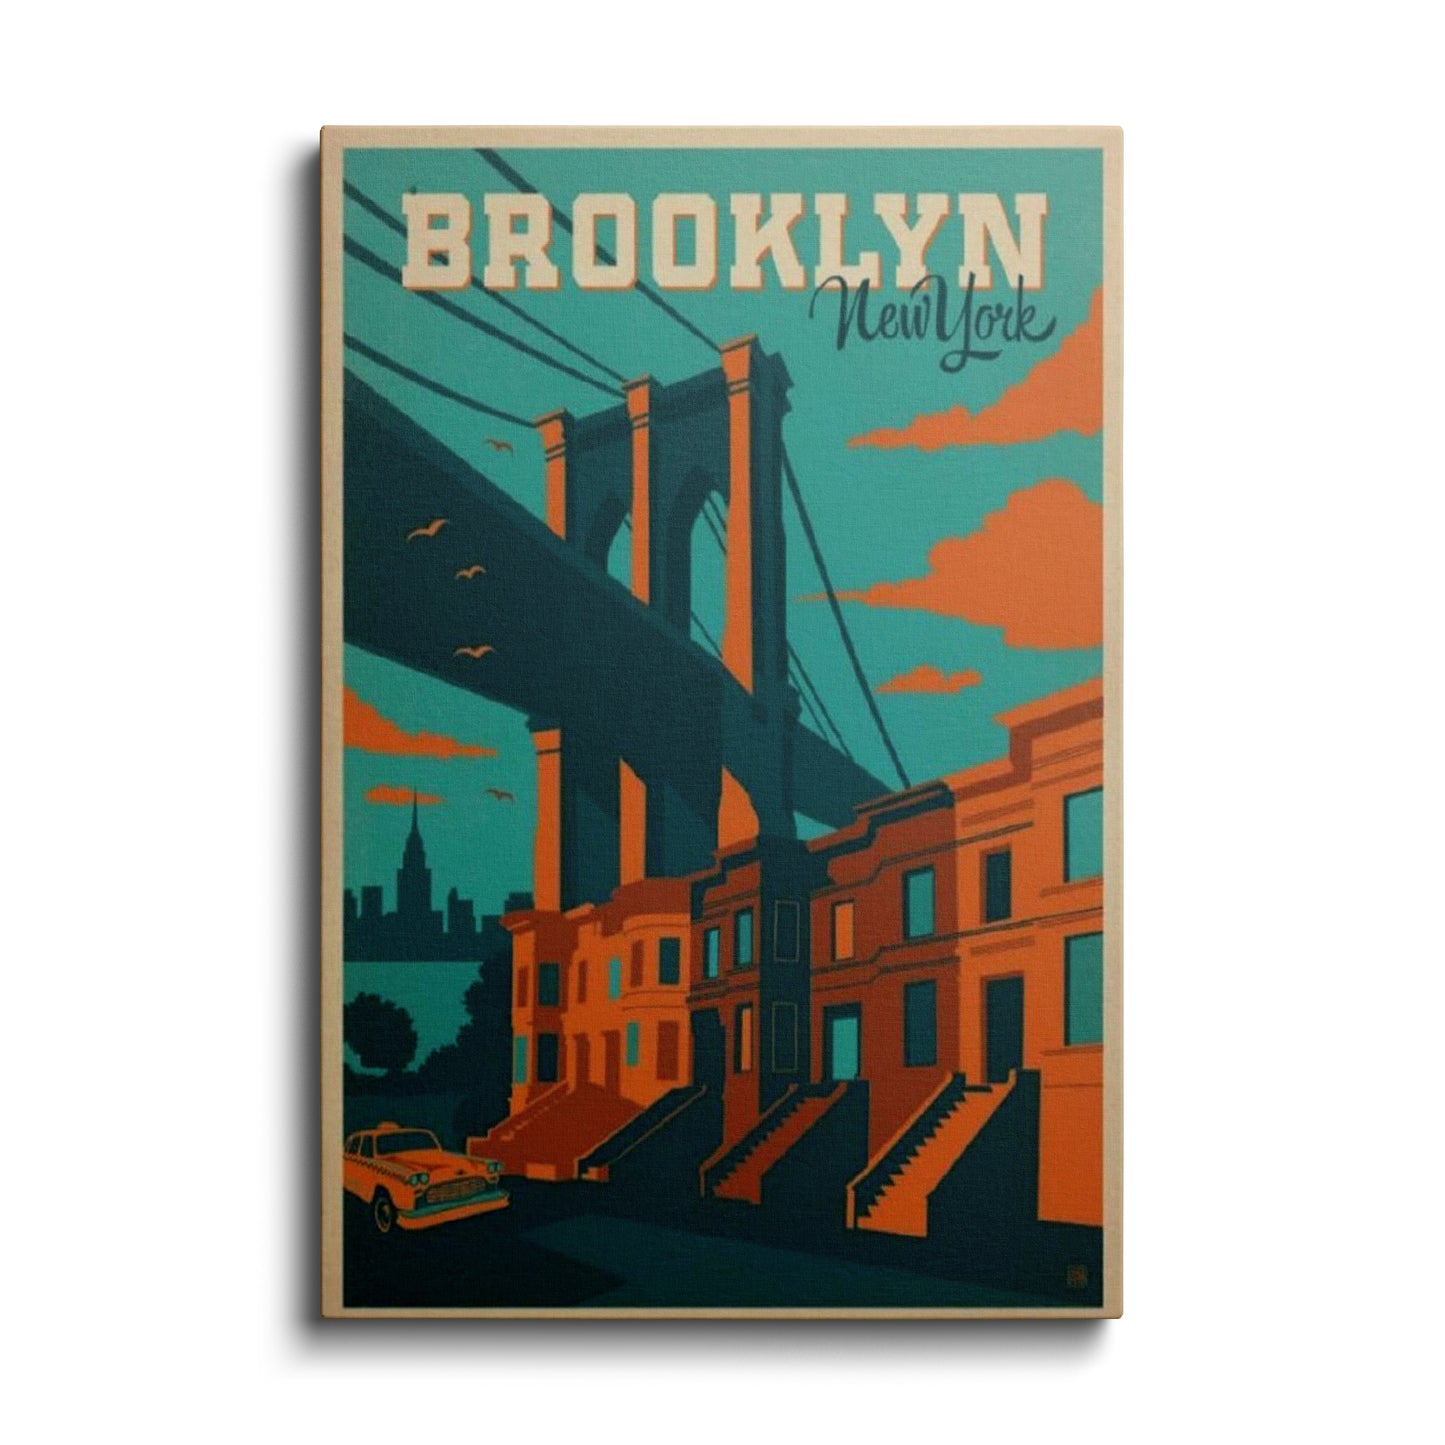 Brooklyn New York---